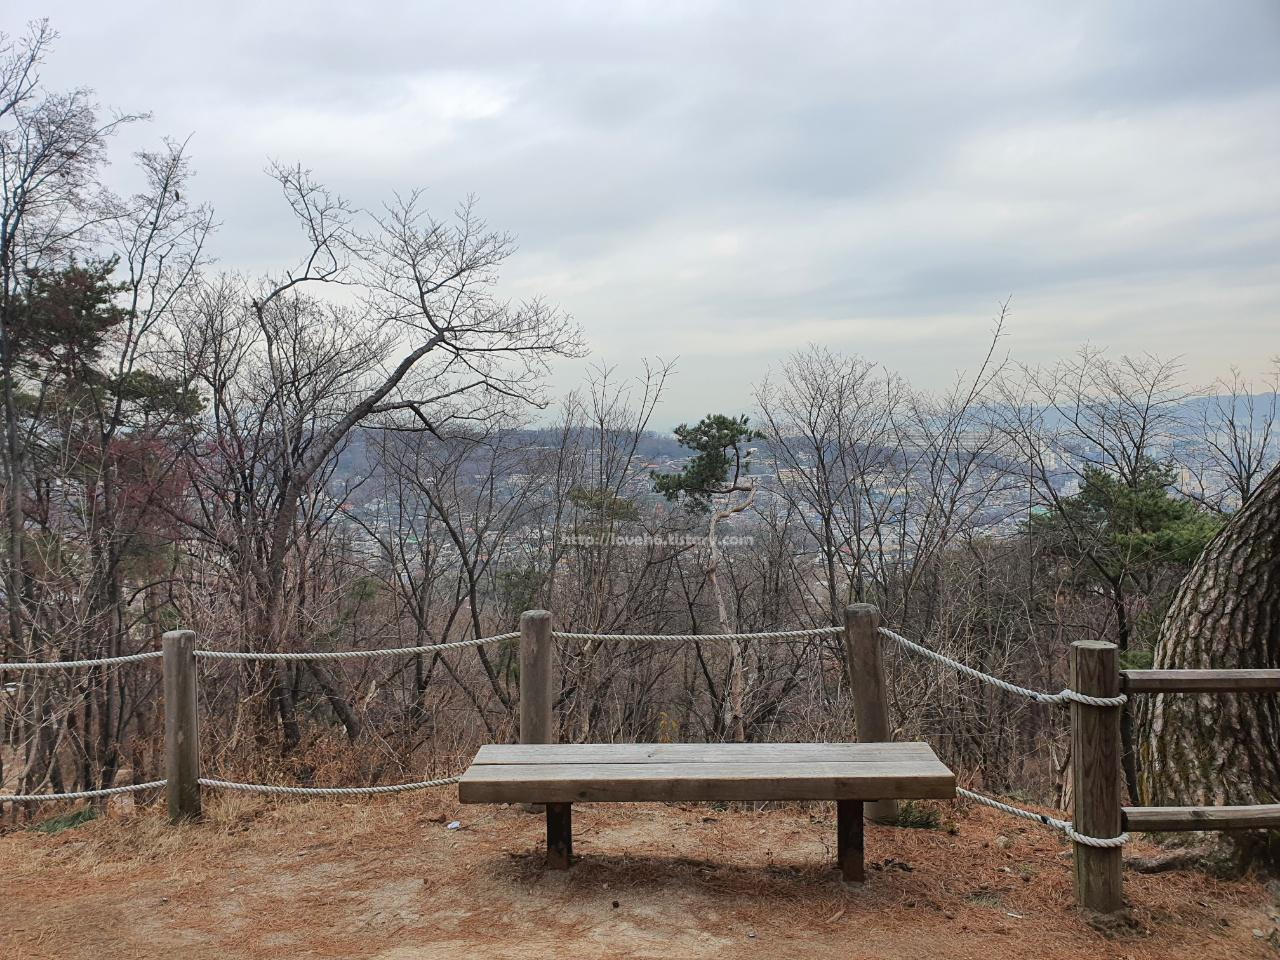 북악산_北岳山_Bukaksan/쨔잔~~ 벤치가 있고 뒤로는 나무들과 서울의 모습이 보입니다.날씨 맑은날 

나뭇가지만 앙상한 겨울 제외

사진 찍으면 예쁠게 나올거 같아요